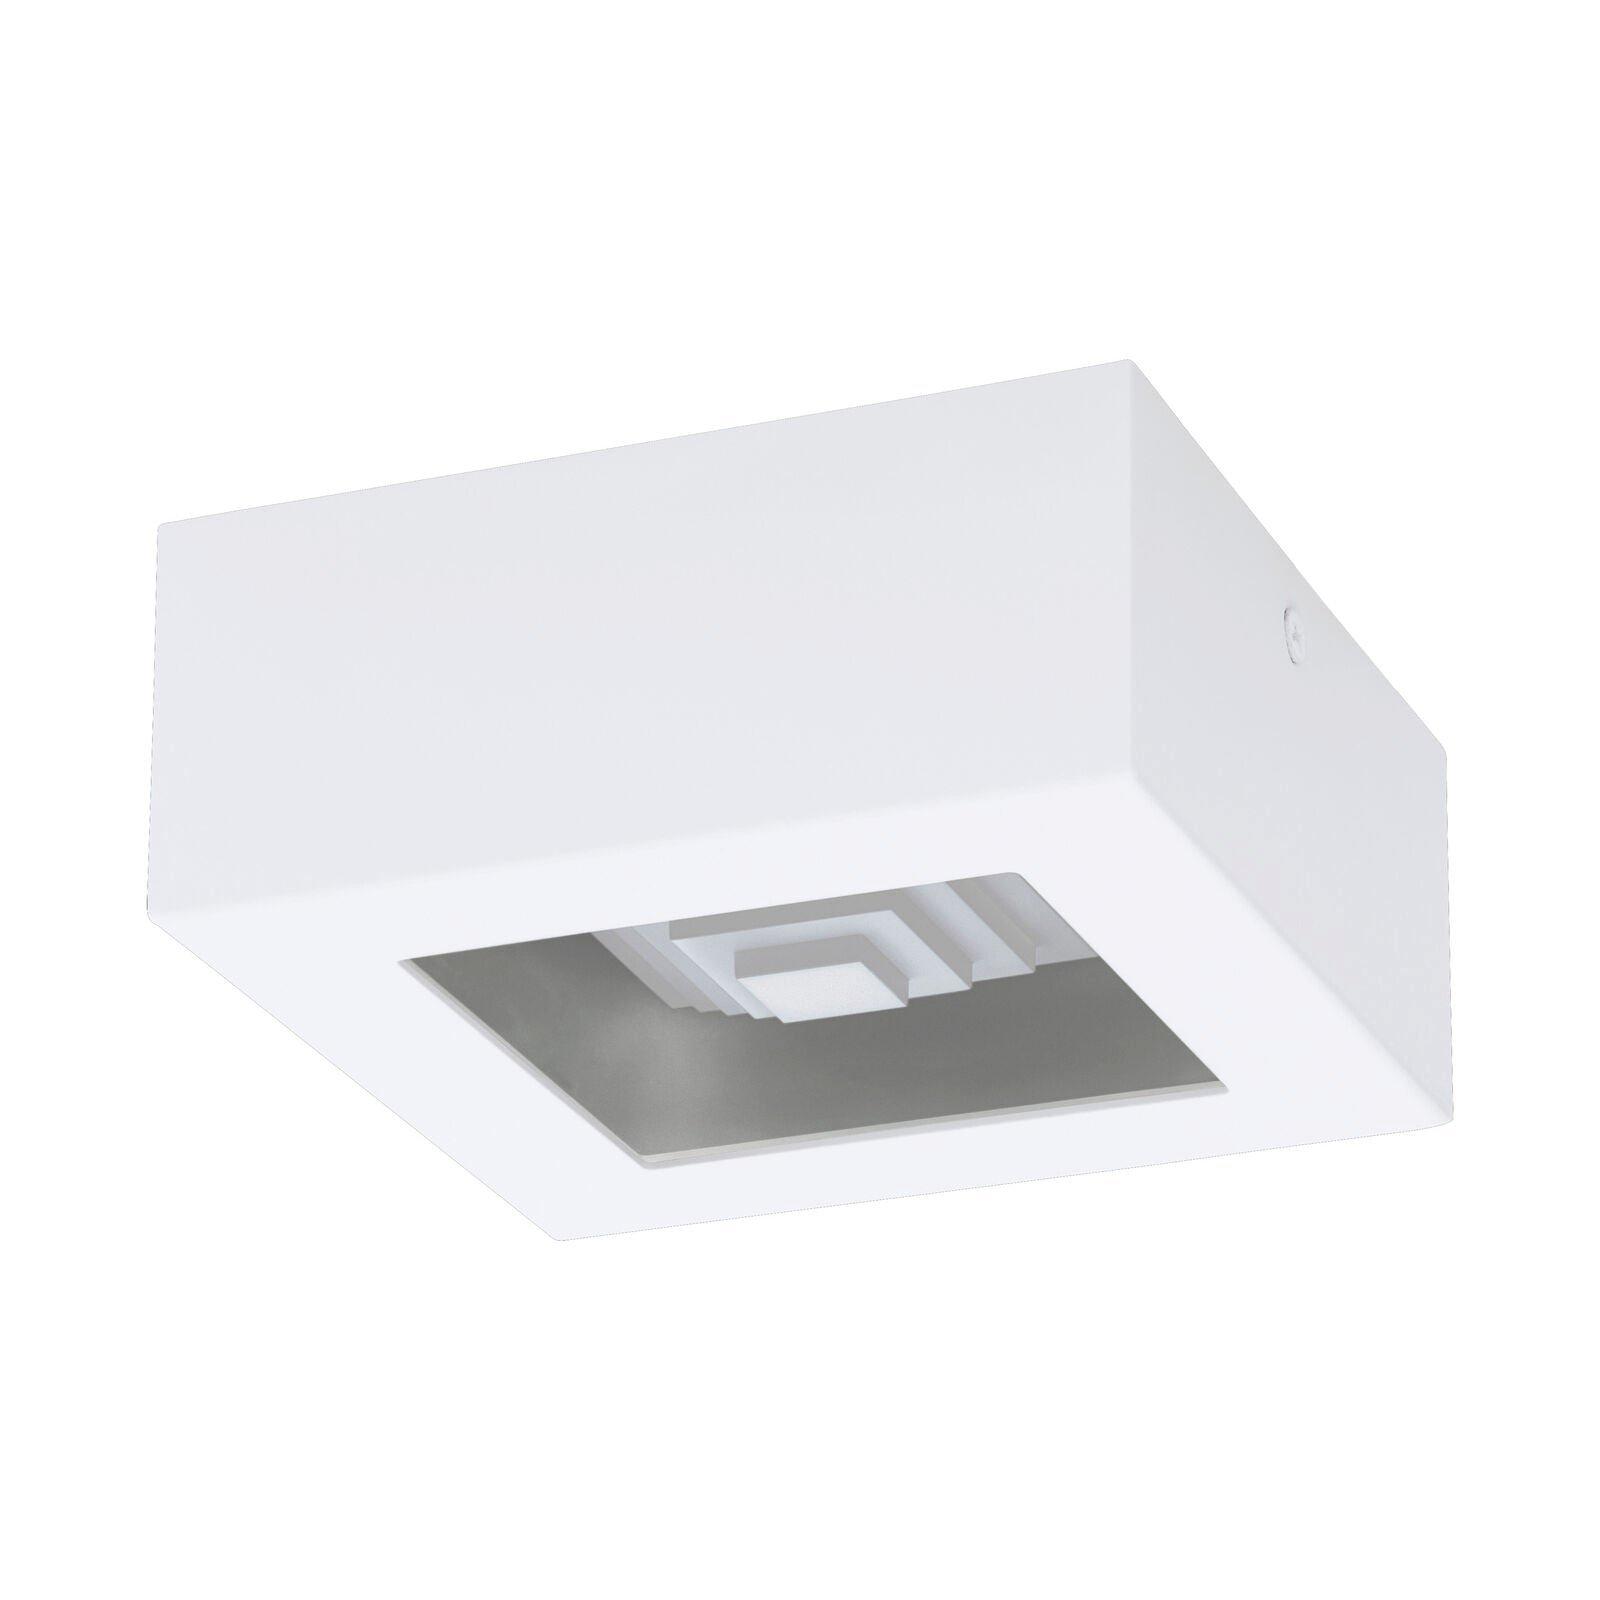 Wall / Ceiling Light Modern White Box Lamp 140mm x 140mm 6.3W Built in LED